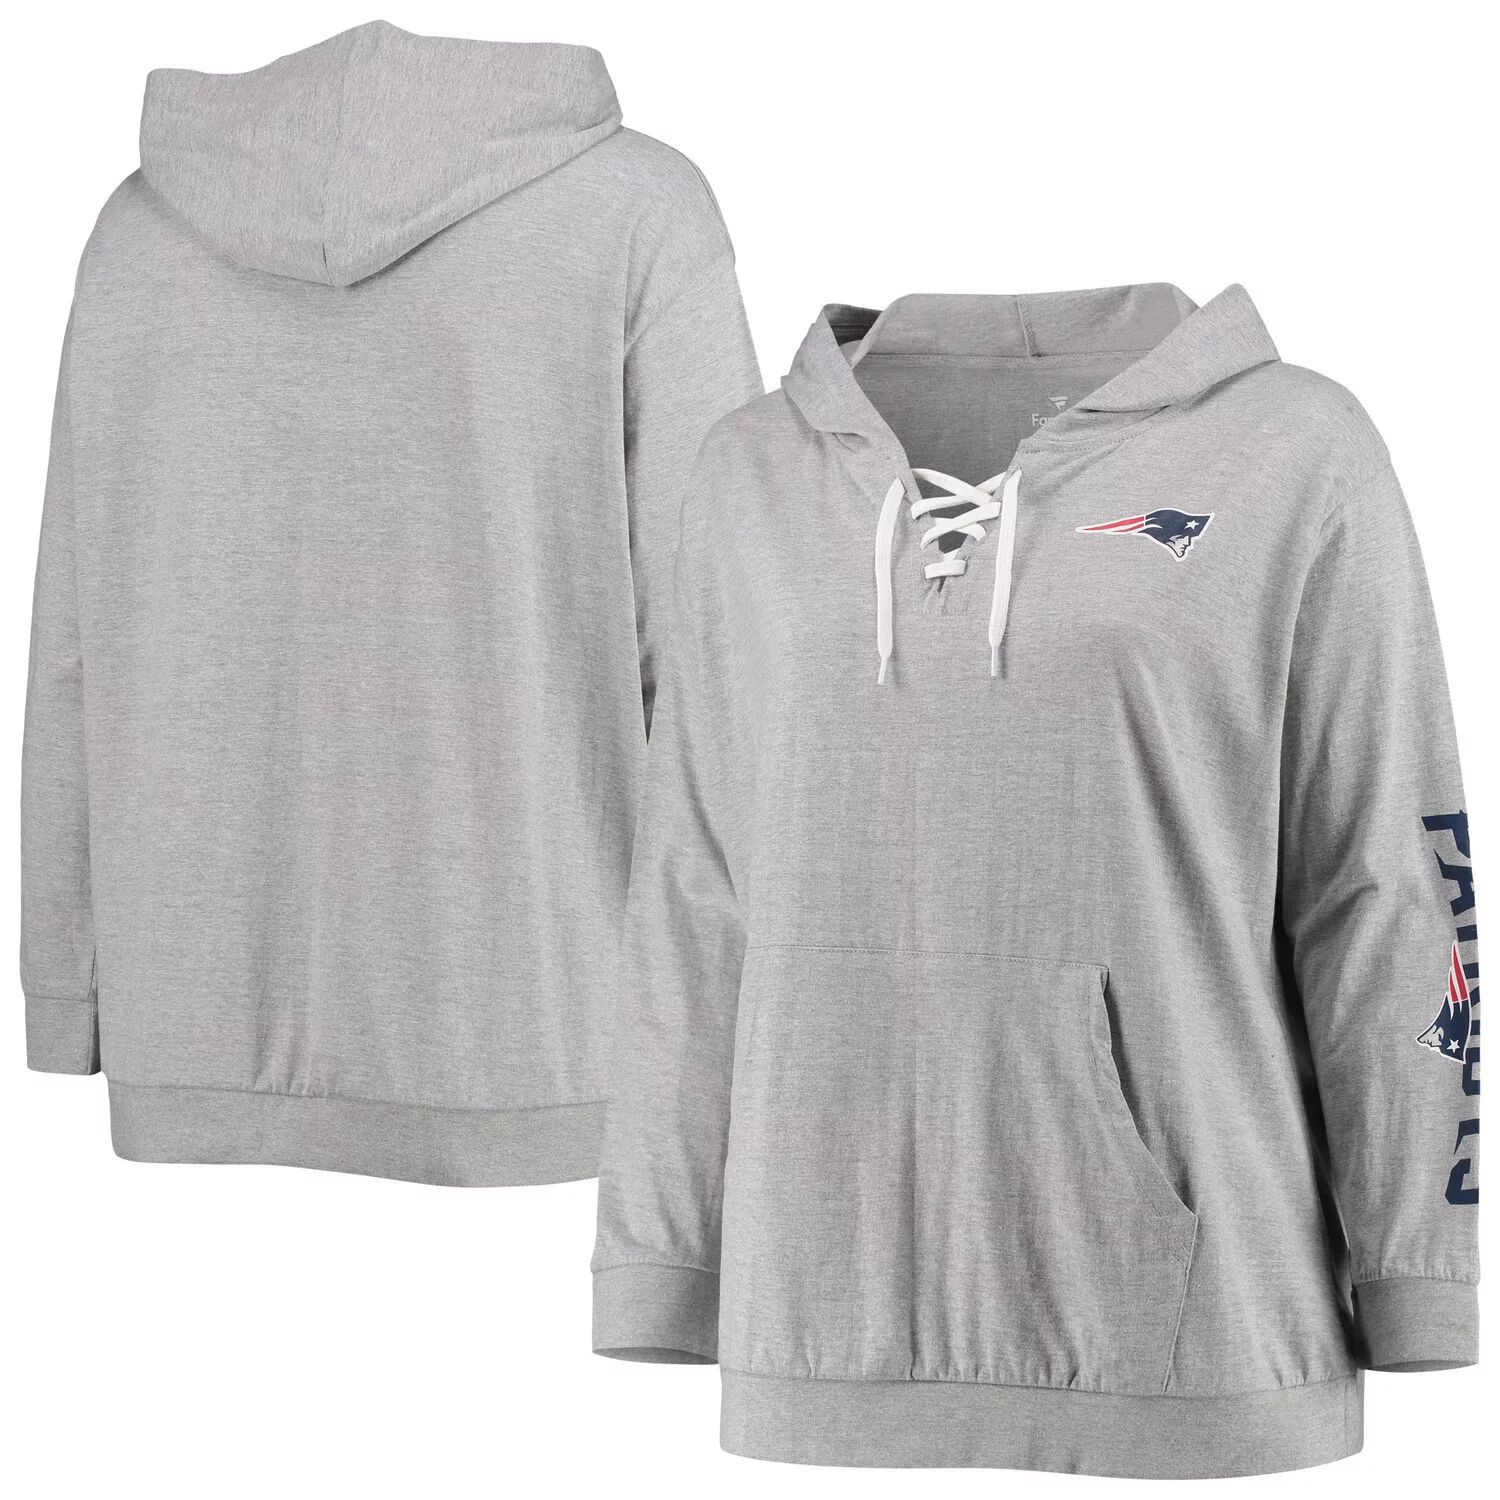 цена Женский пуловер с капюшоном на шнуровке, серый New England Patriots с фирменным логотипом Fanatics, пуловер с капюшоном Fanatics